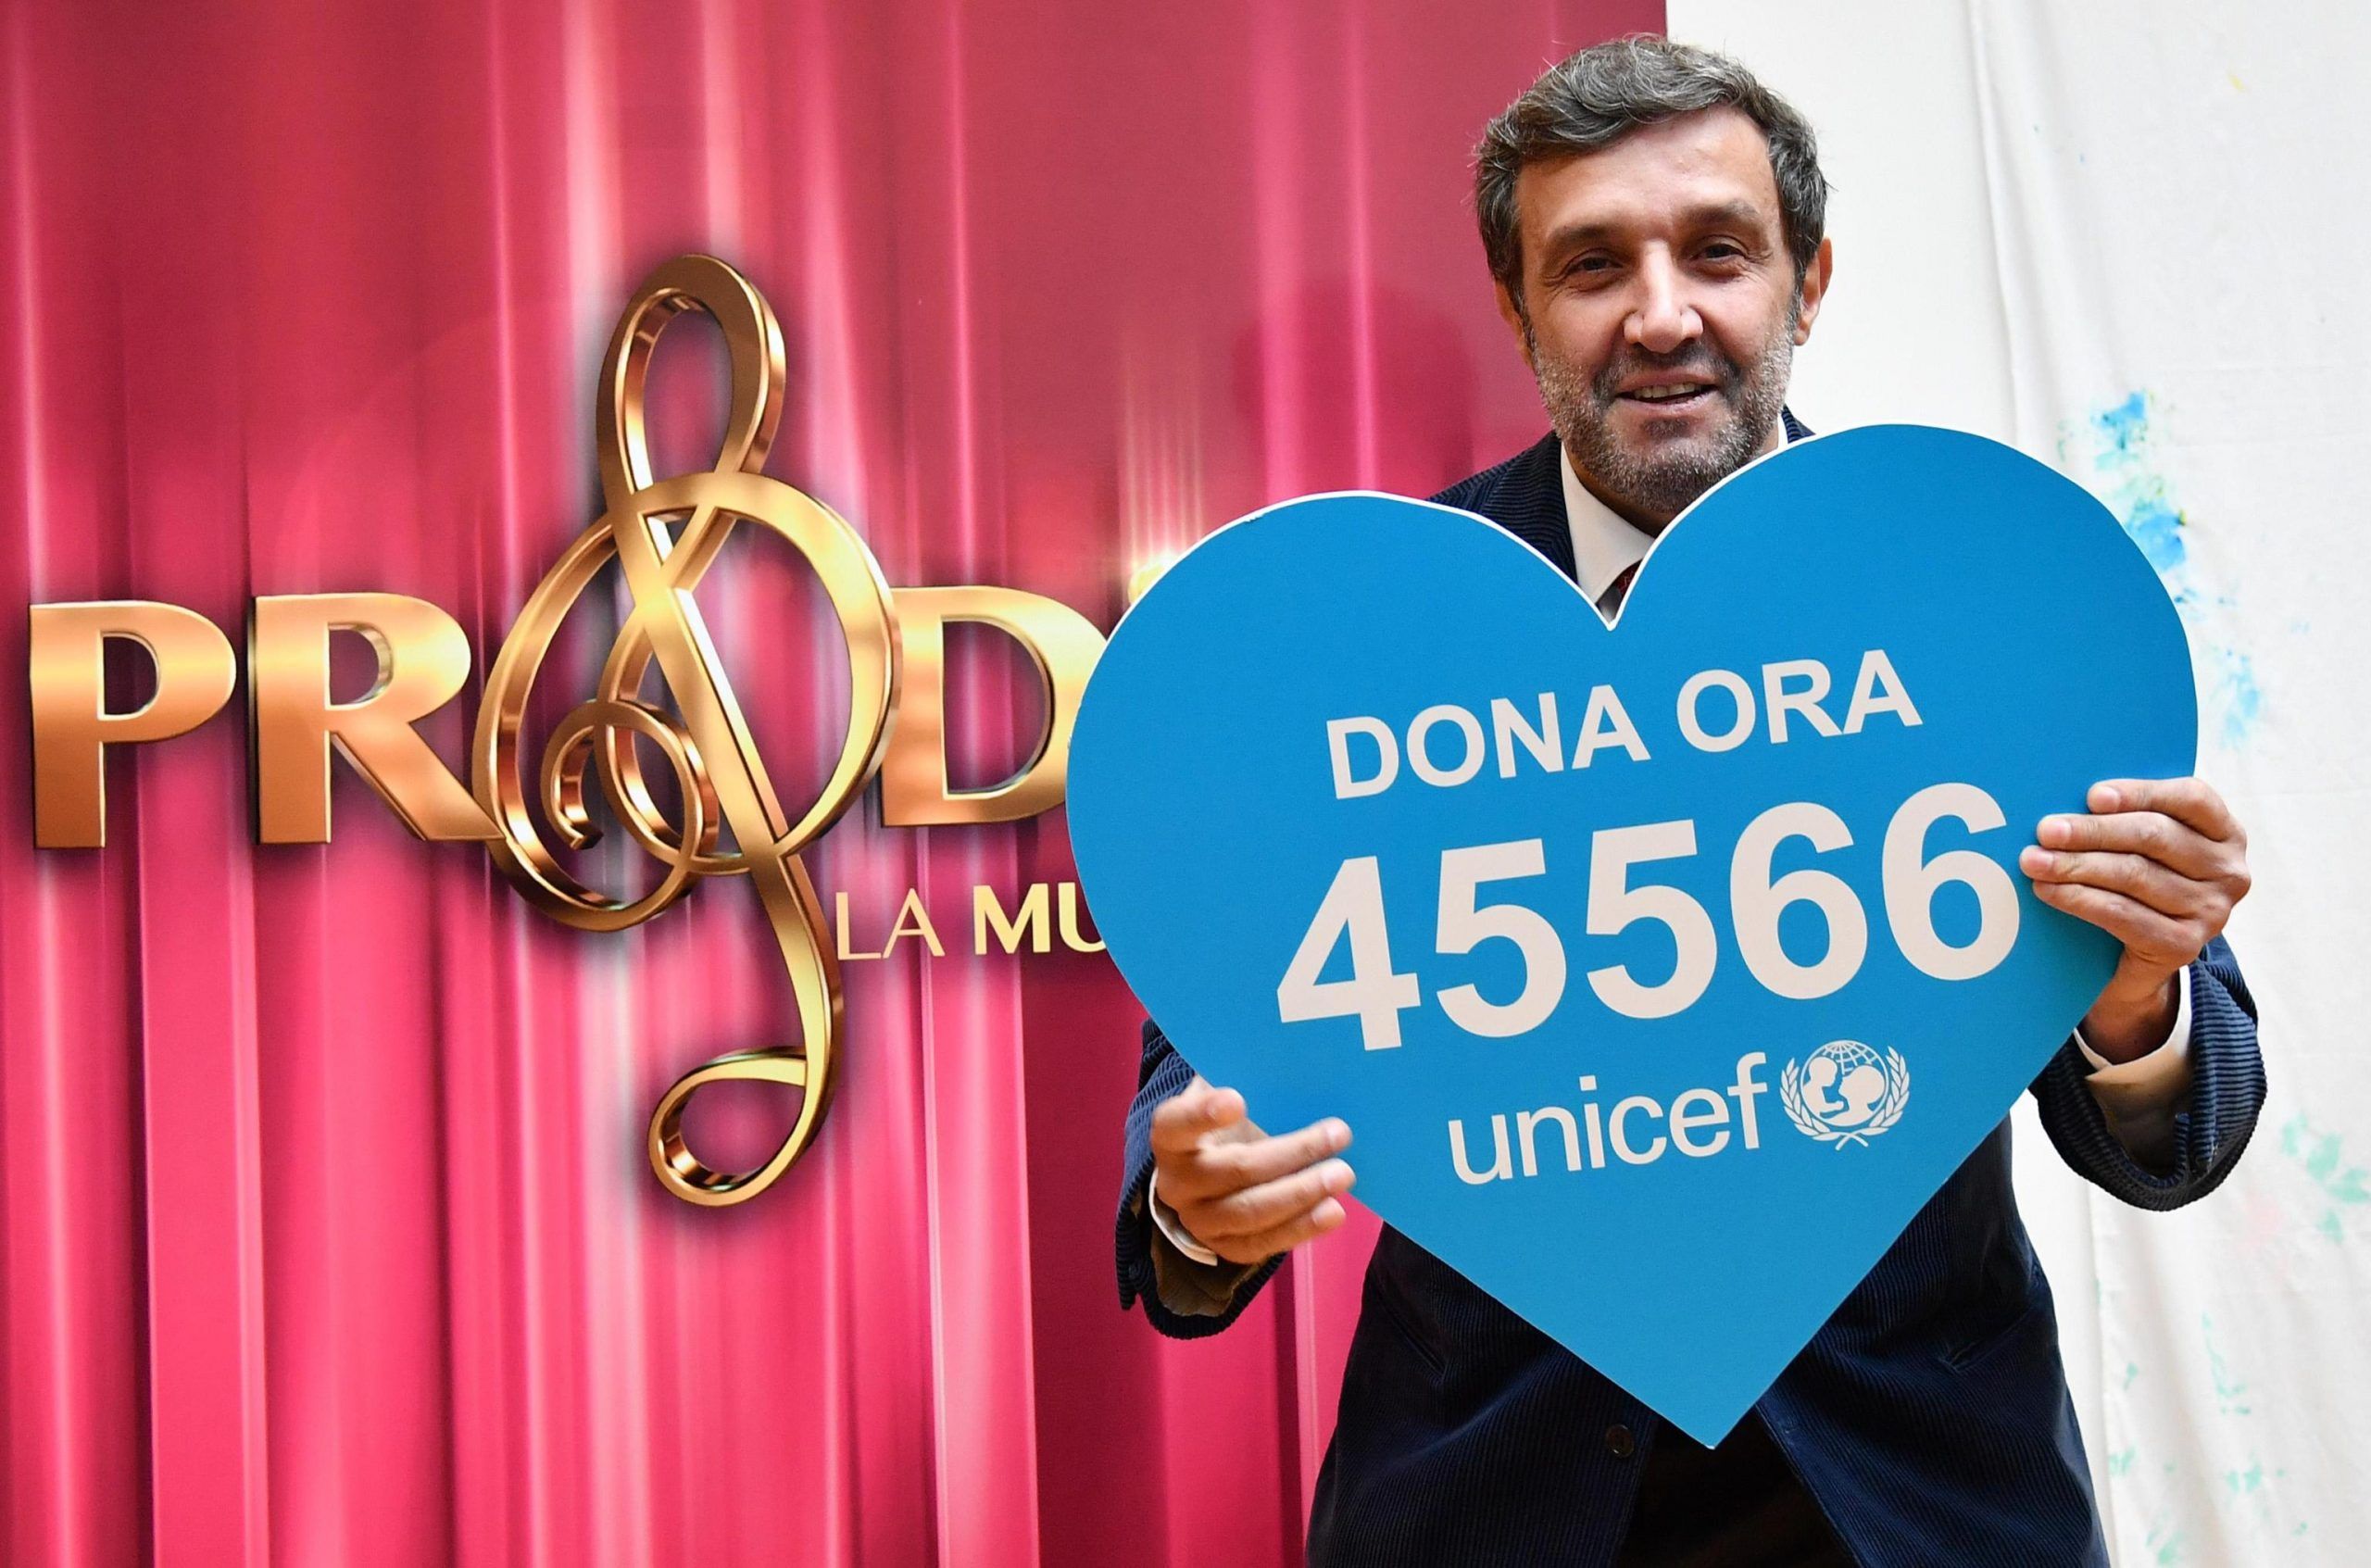 Flavio Insinna: ‘Mai dato del pezzente al giornalista: donate all’Unicef!’